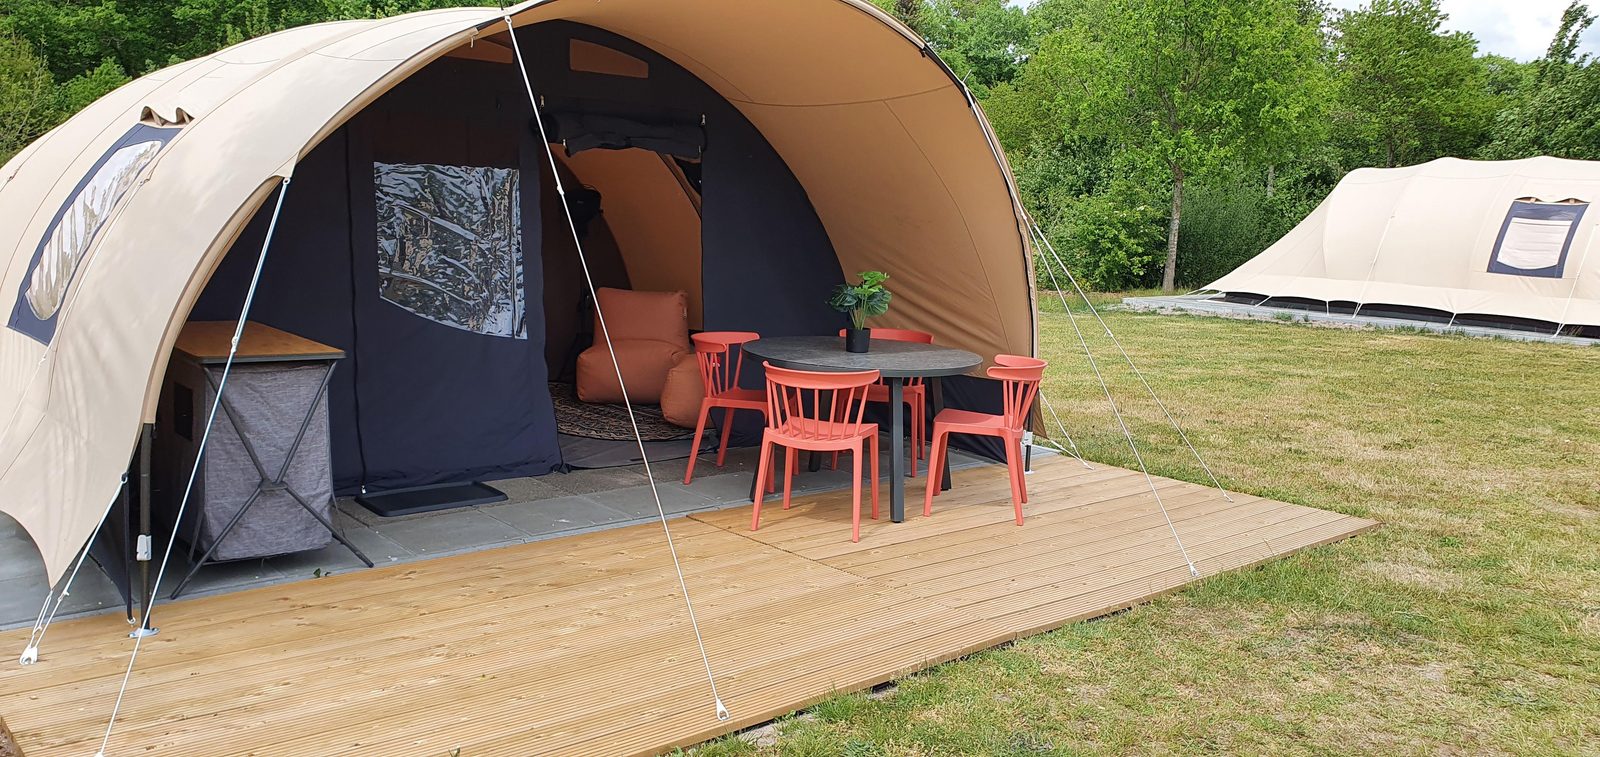 Heerlijk kamperen in onze ingerichte tenten